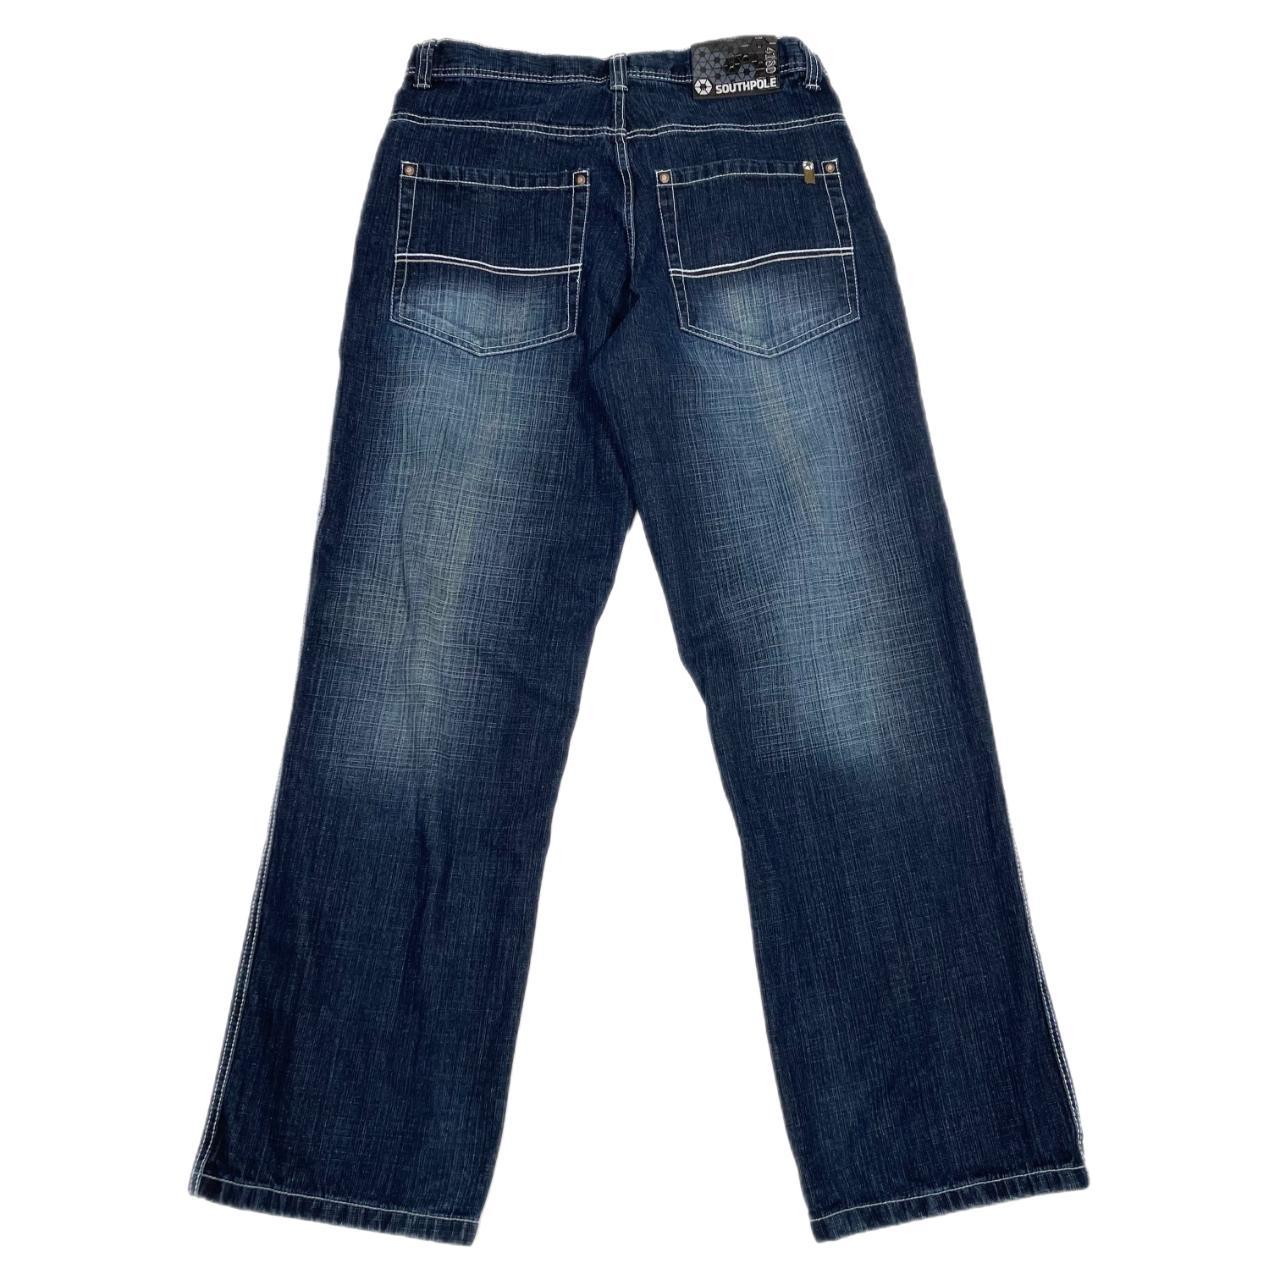 Vintage South Pole baggy jeans • Size 34x34 • Pre... - Depop